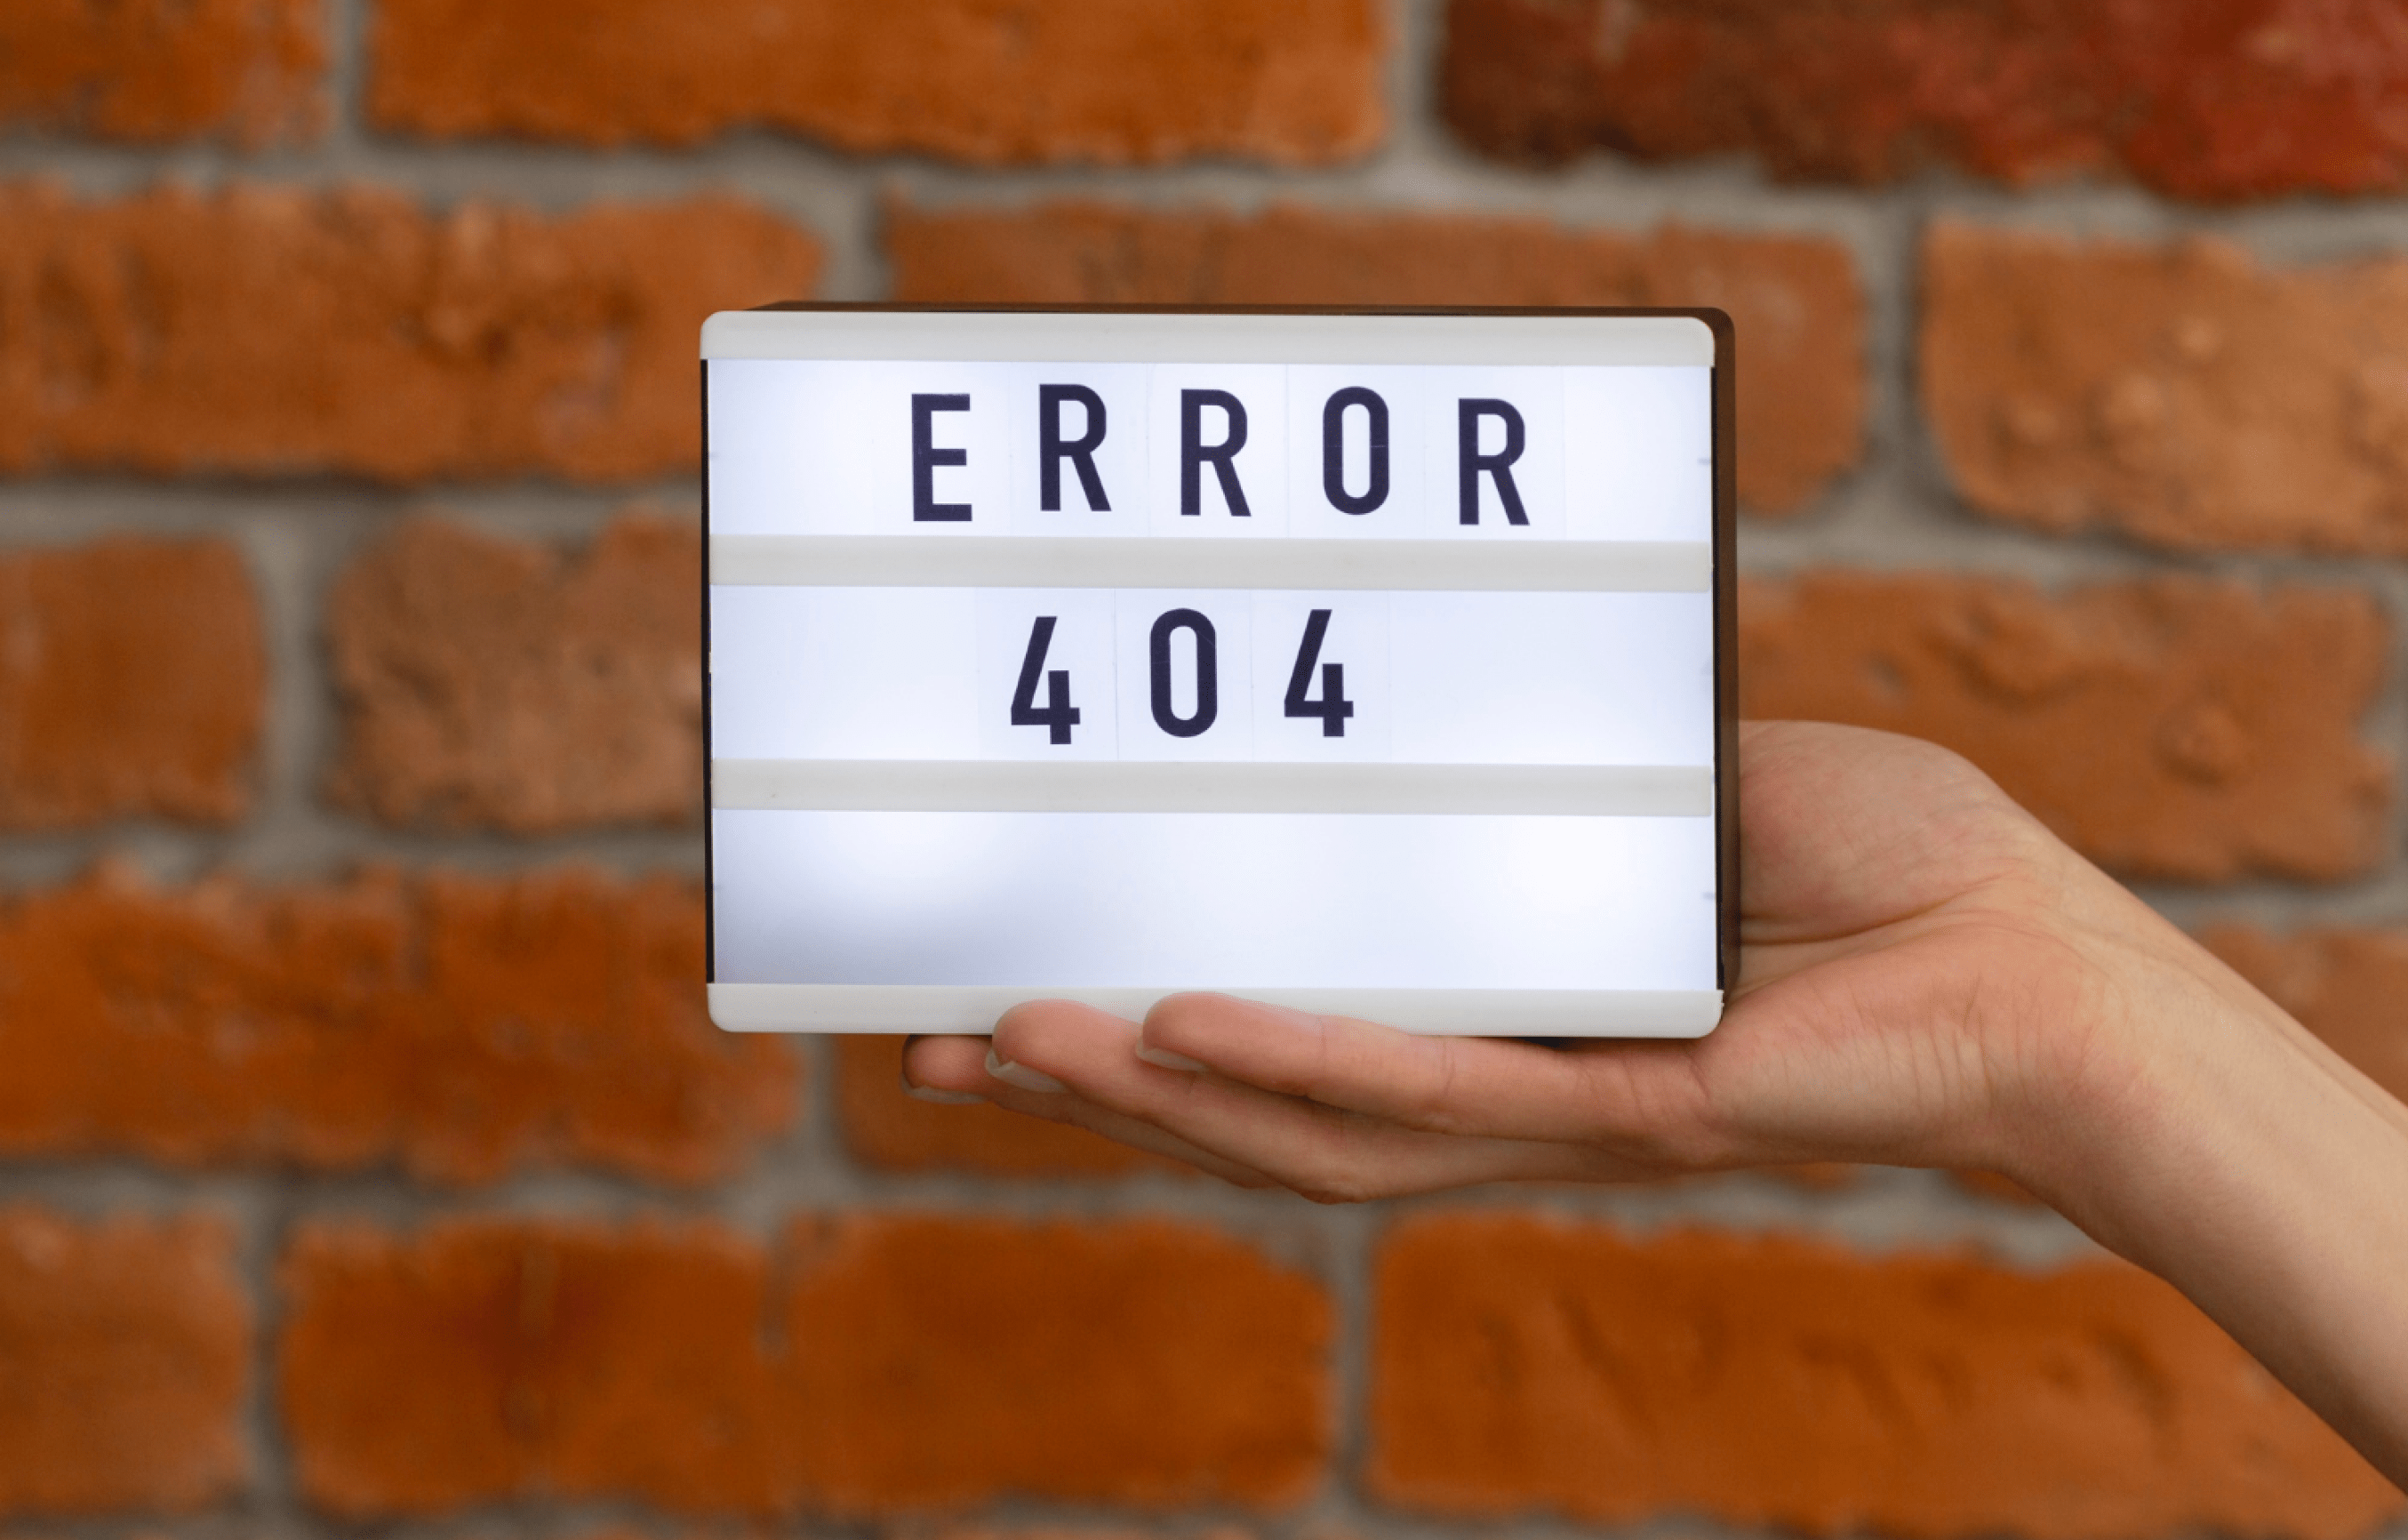 Error 404 NOT FOUND